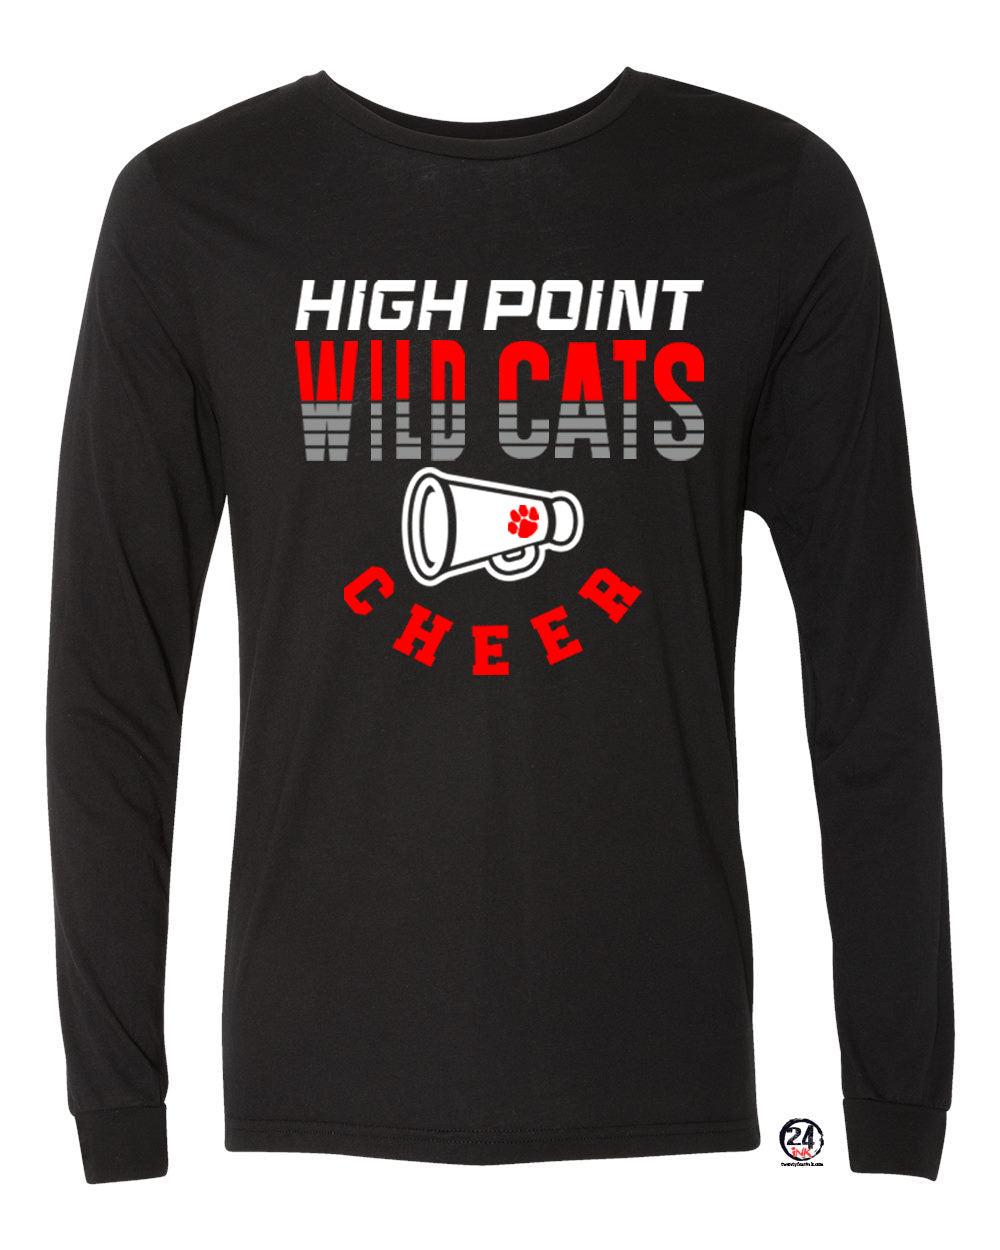 Wildcats Cheer Design 2 Long Sleeve Shirt